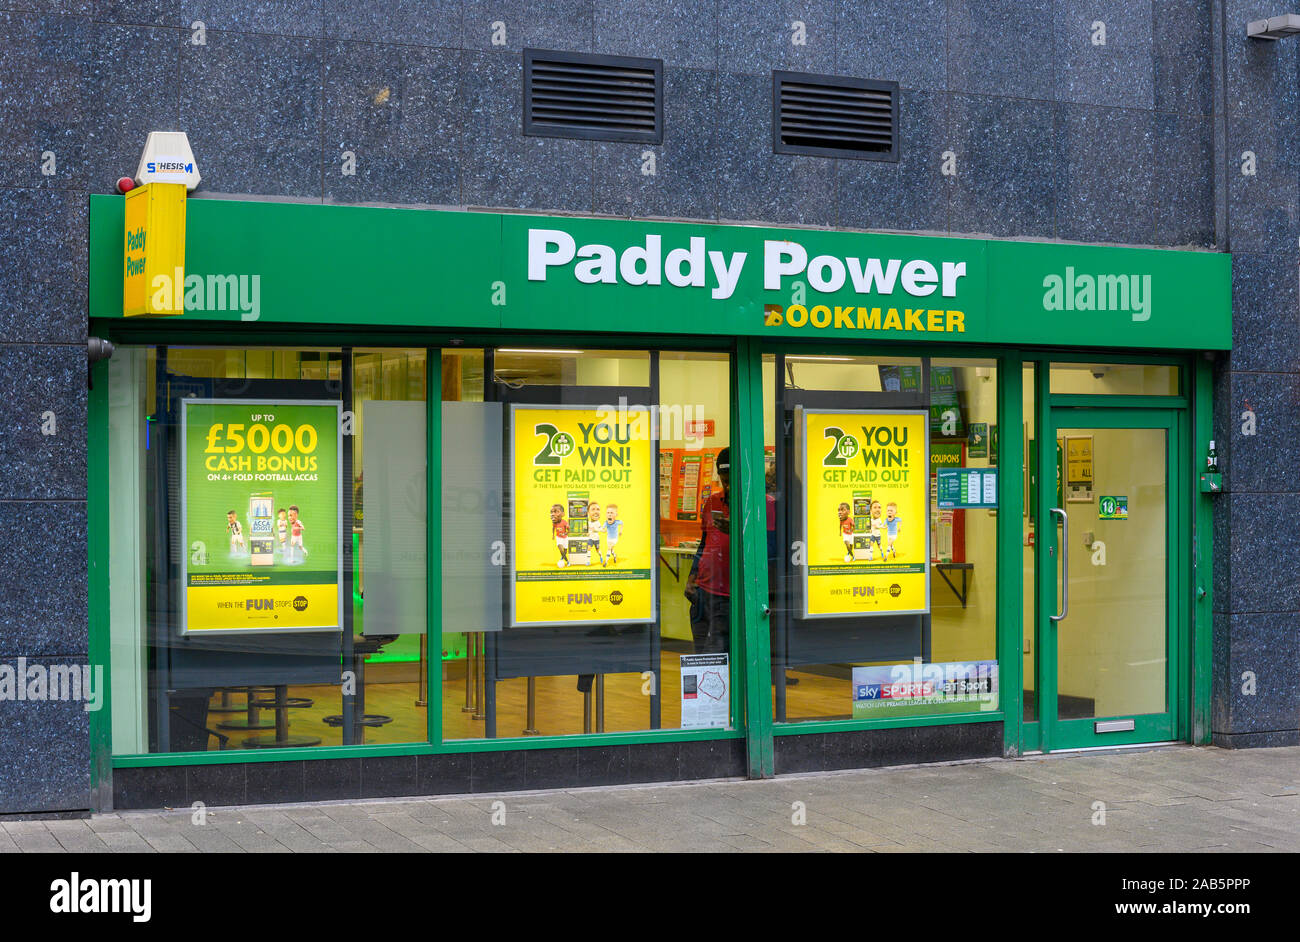 Paddy Power lizenzierte Wettbüro - Buchmacher -, Bull Street, Birmingham, Innenstadt Birmingham, West Midlands, England, Großbritannien. Stockfoto